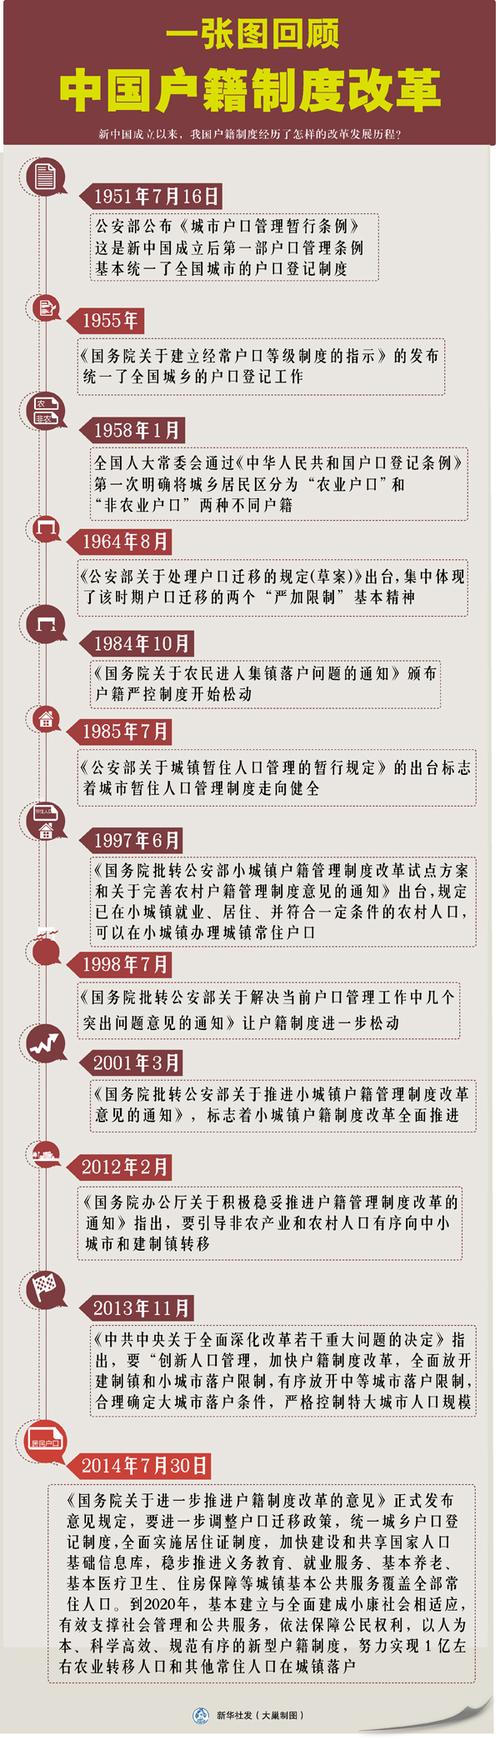 一张图回顾中国户籍制度改革